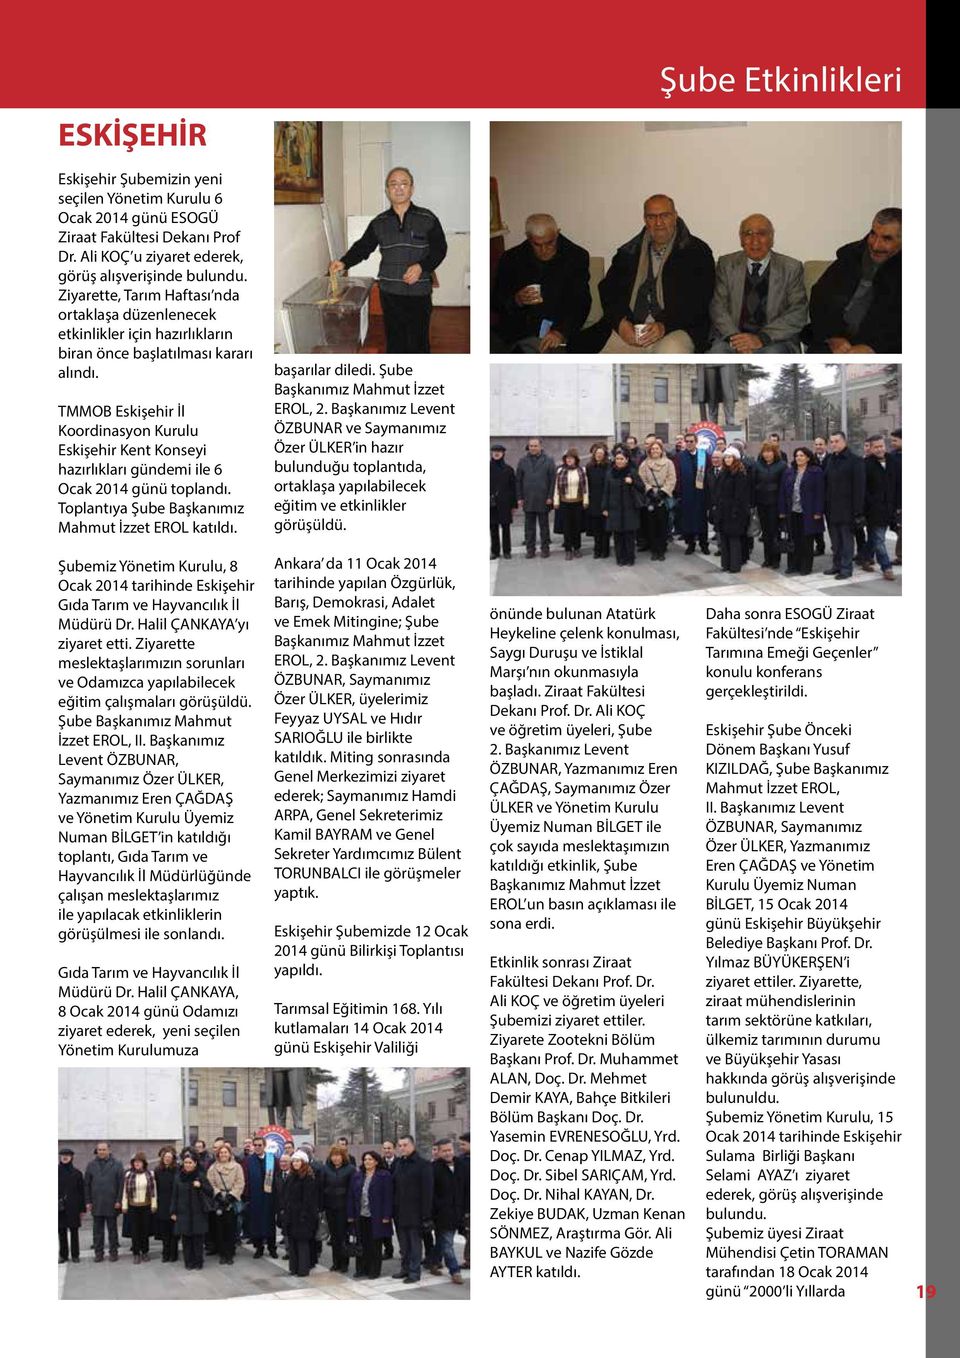 TMMOB Eskişehir İl Koordinasyon Kurulu Eskişehir Kent Konseyi hazırlıkları gündemi ile 6 Ocak 2014 günü toplandı. Toplantıya Şube Başkanımız Mahmut İzzet EROL katıldı. başarılar diledi.